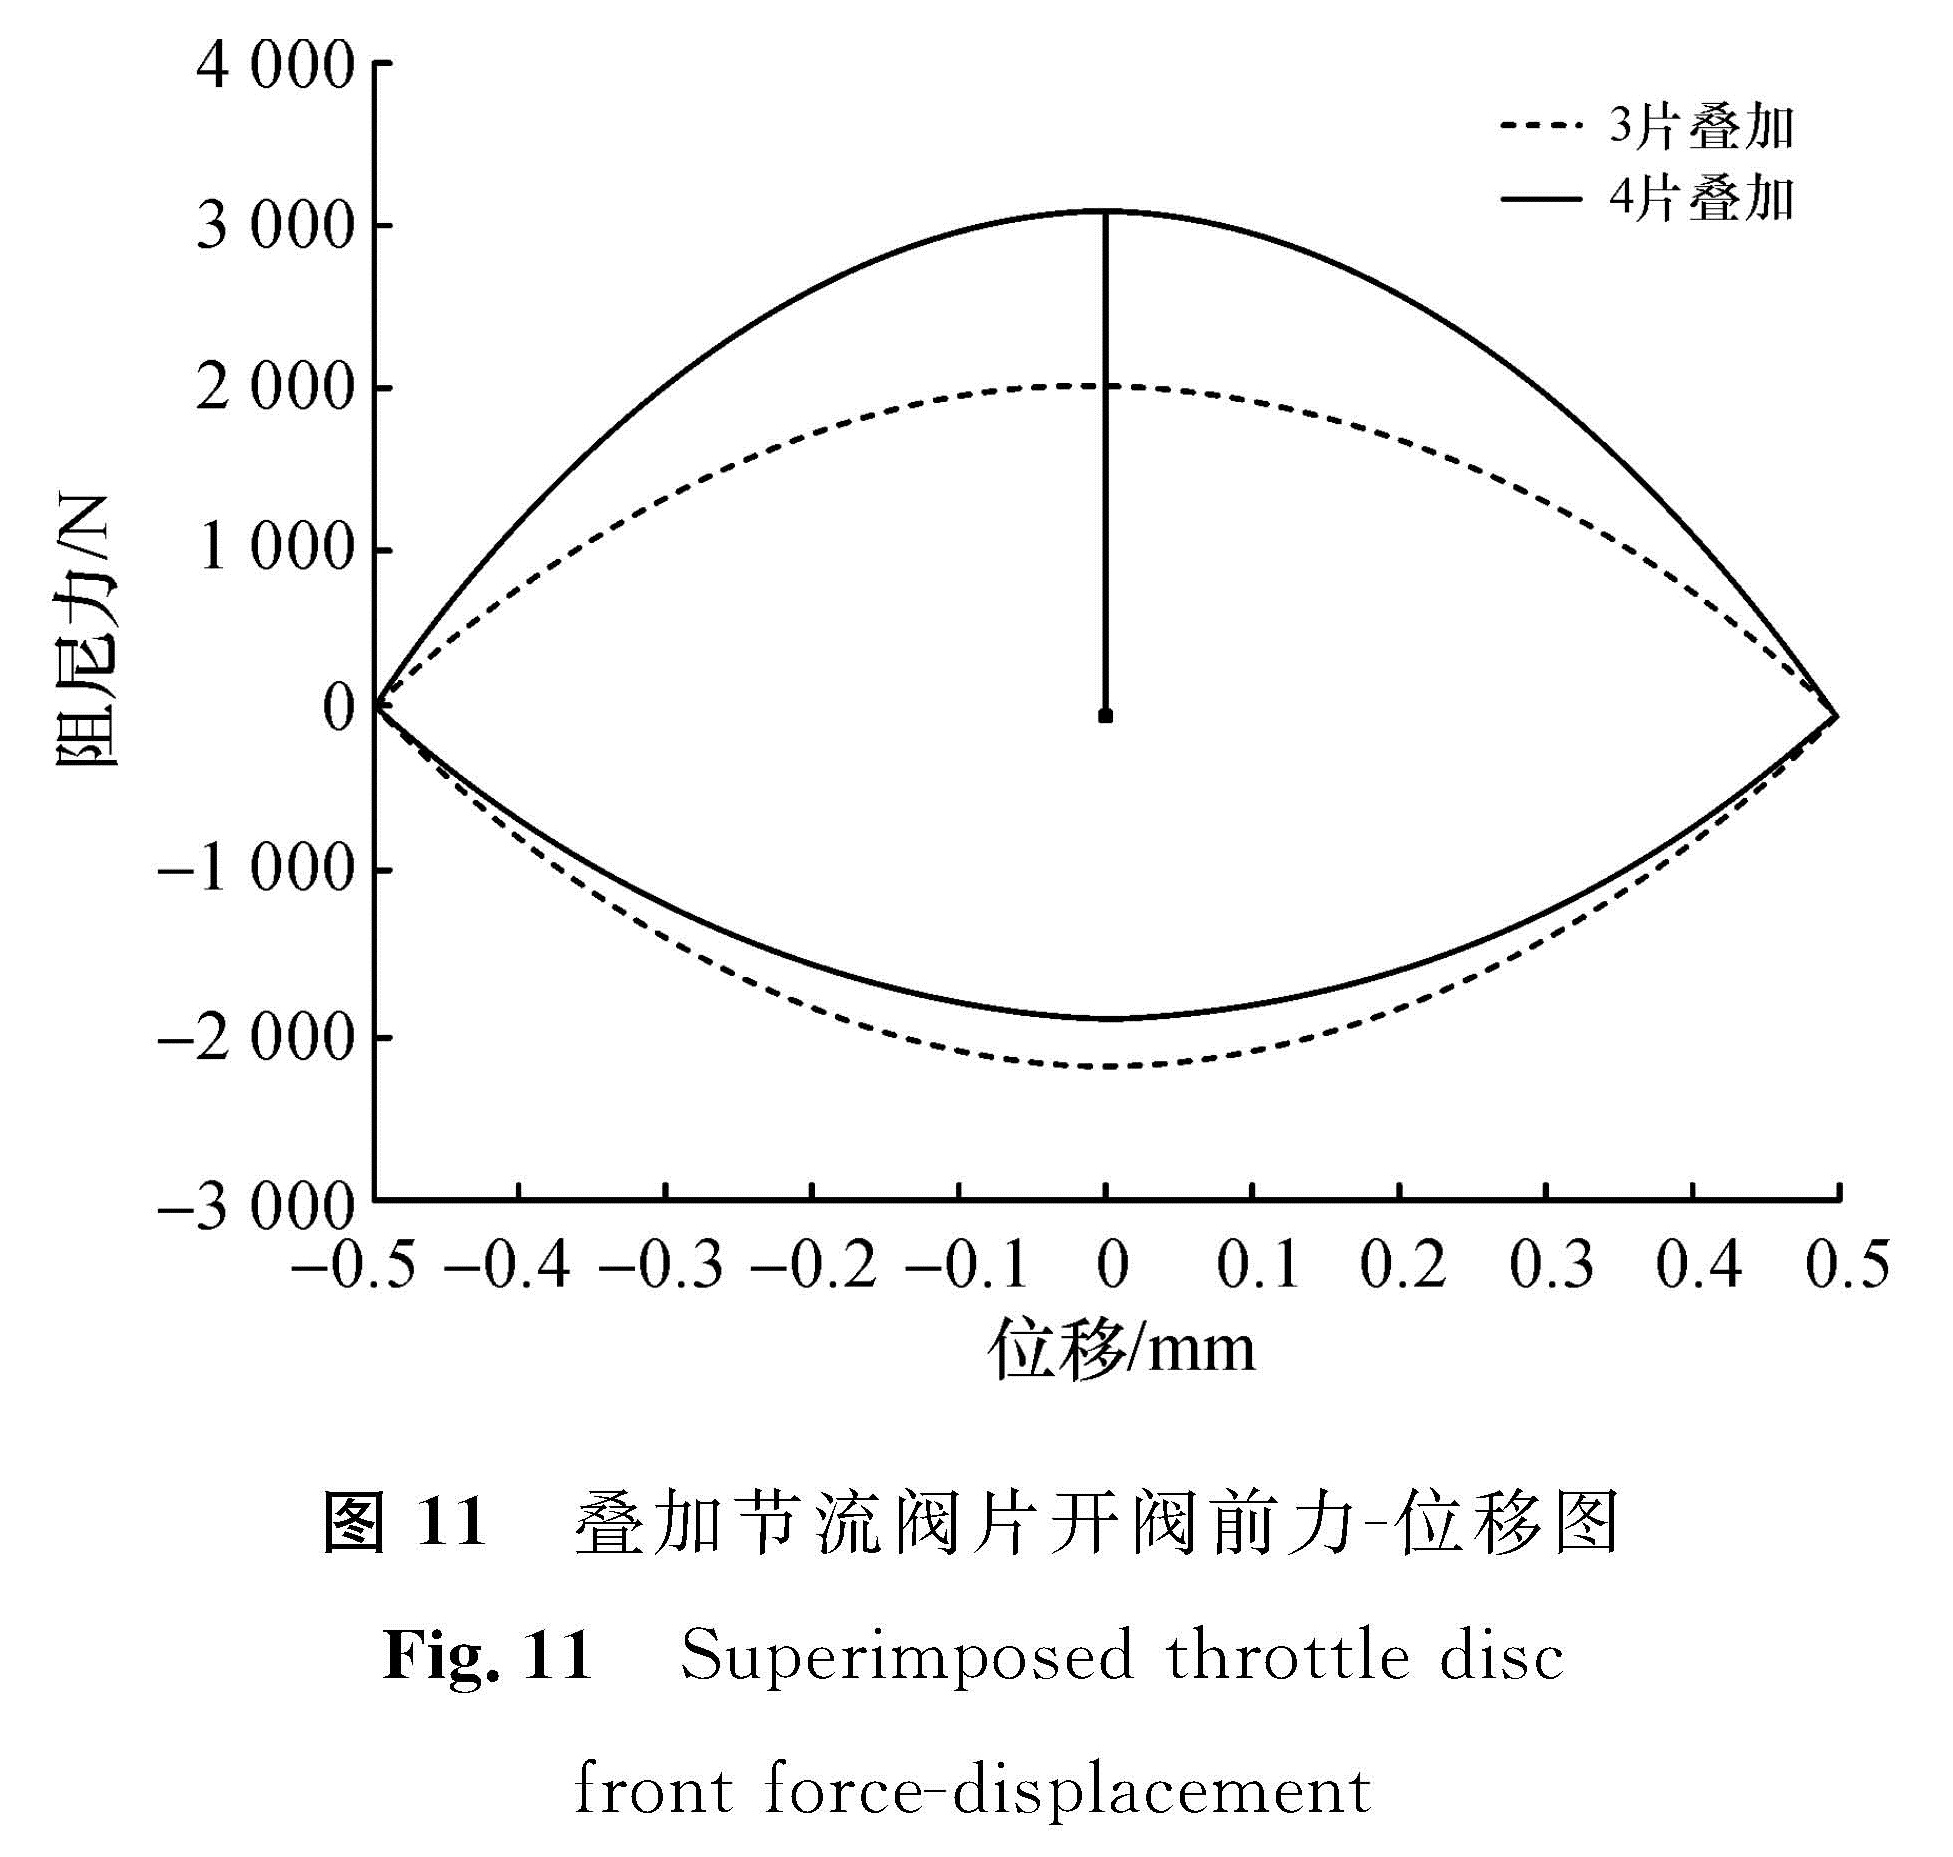 图 11 叠加节流阀片开阀前力-位移图<br/>Fig.11 Superimposed throttle disc front force-displacement